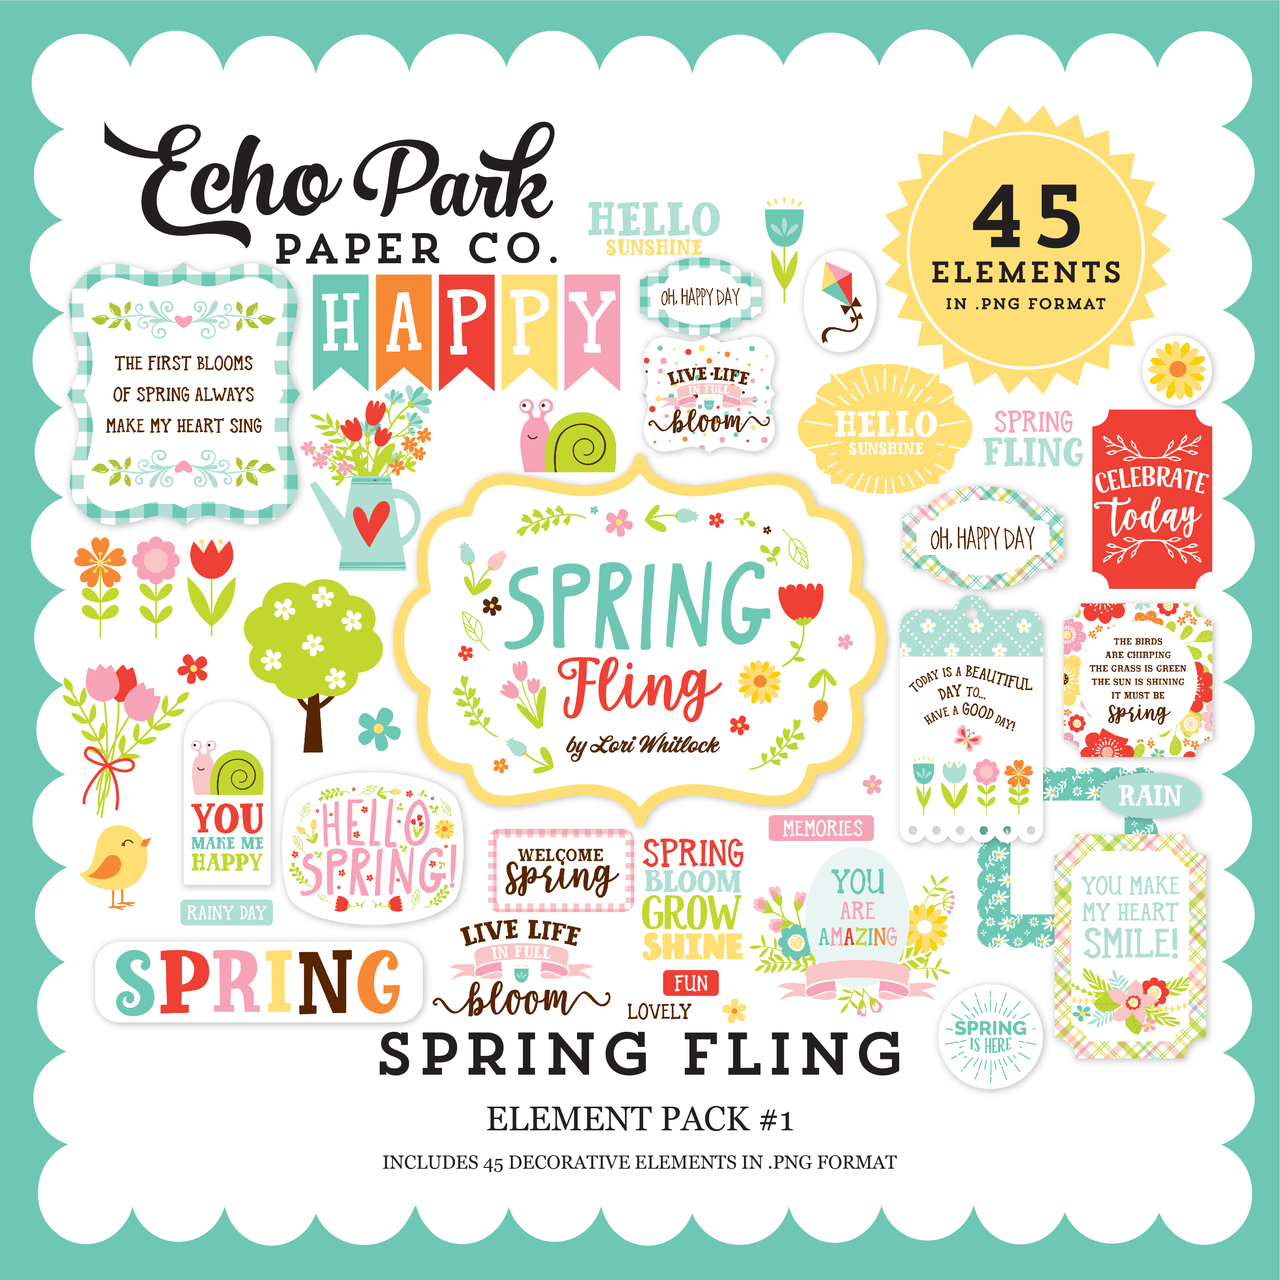 Spring Fling Element Pack #1